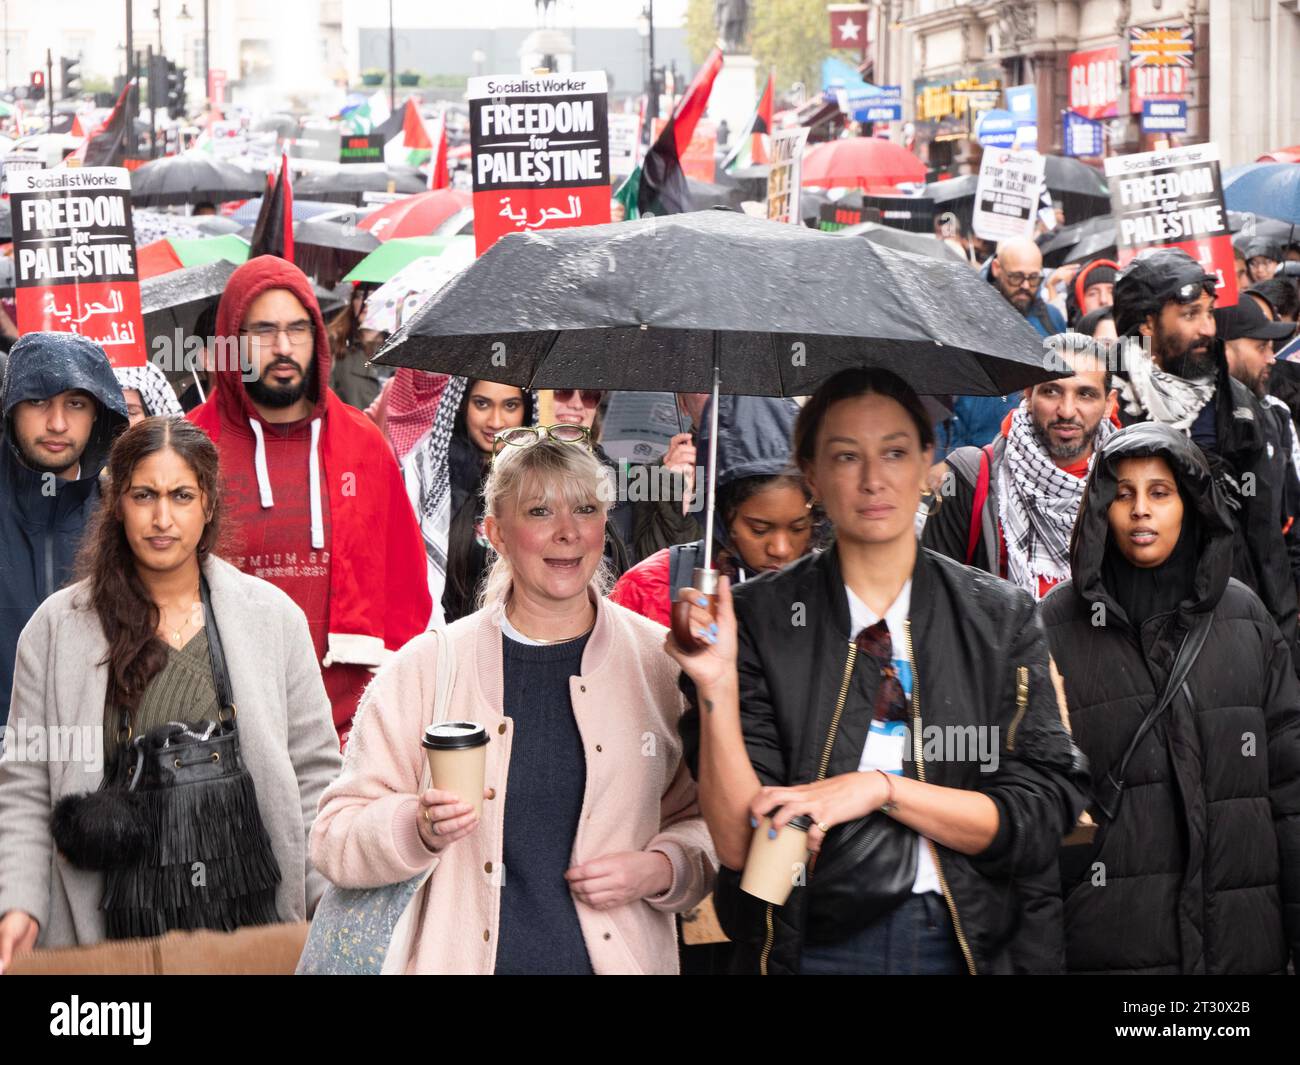 Manifestanti pro-palestinesi a Londra, nel Regno Unito, alla manifestazione della marcia Nazionale per la Palestina fermare la guerra a Gaza, marciare per protestare contro il confict di Israele Palestina sulla Striscia di Gaza. Manifestanti che marciano verso Downing Street con manifesti. Foto Stock